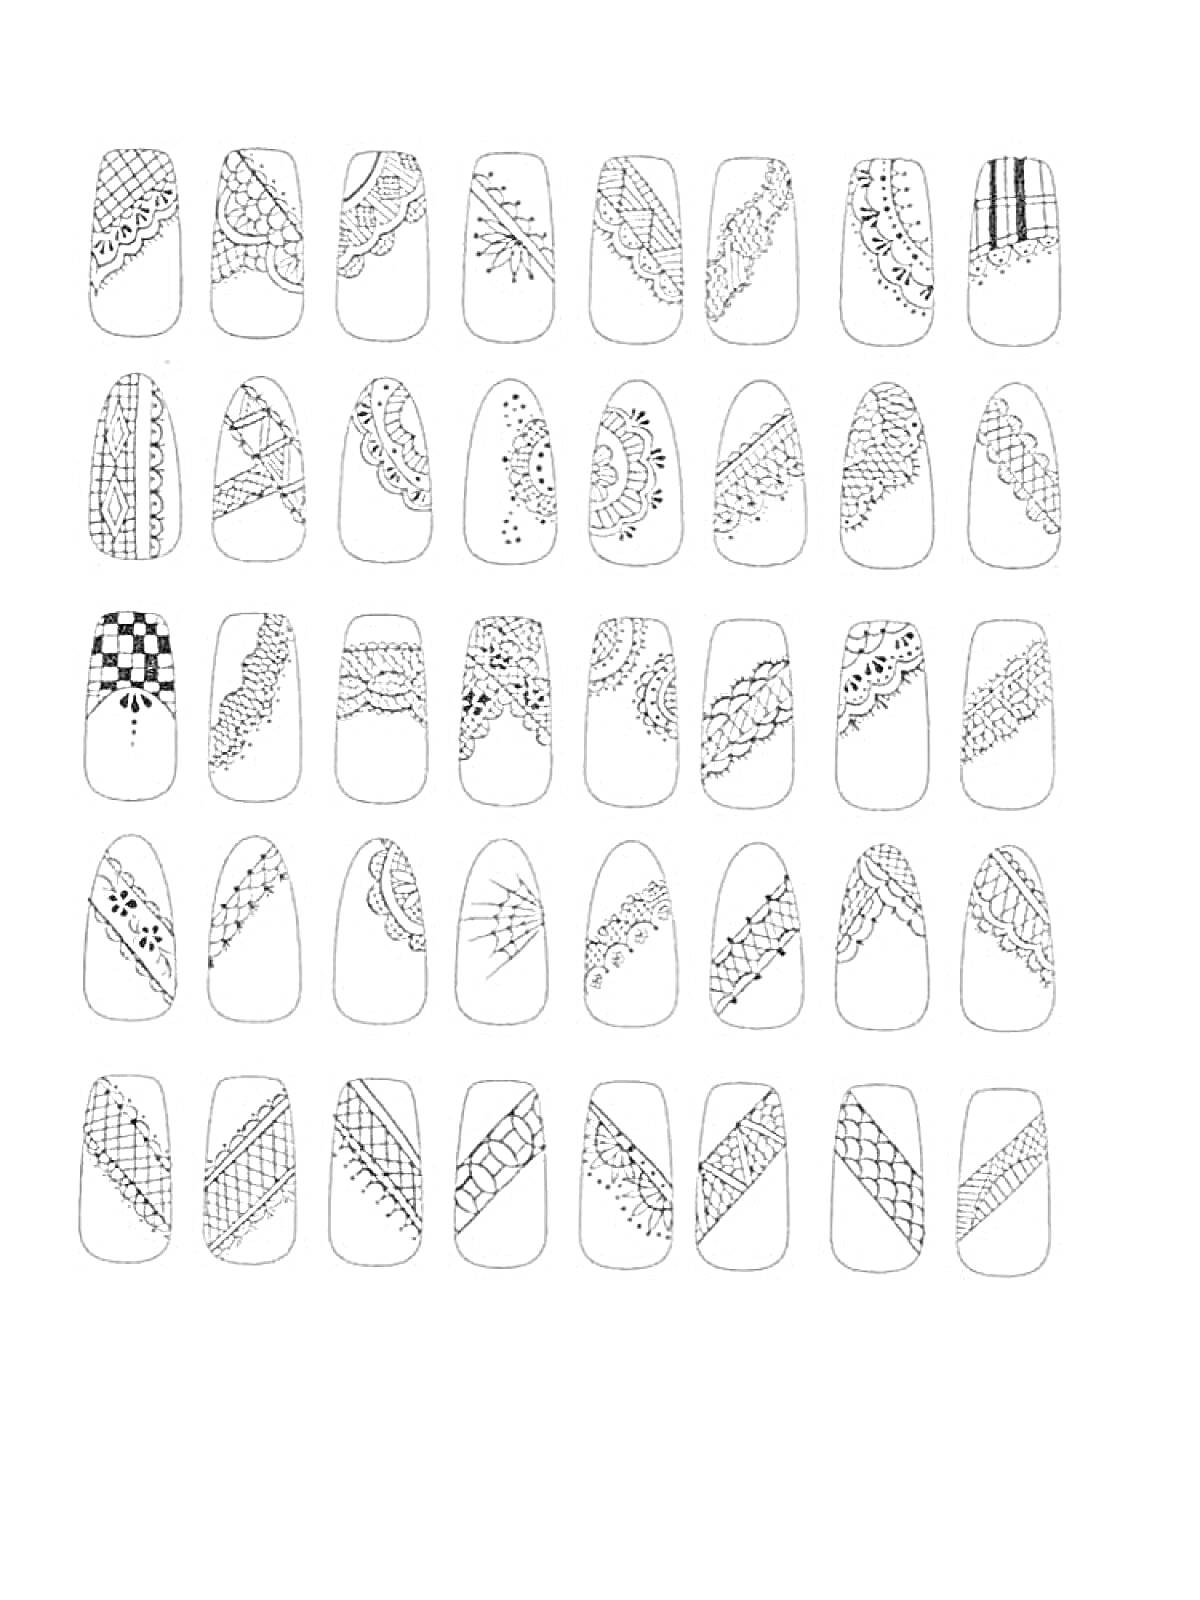 Раскраска Дизайны для ногтей: узоры, линии, точки, сетки, кружевные элементы, геометрические формы